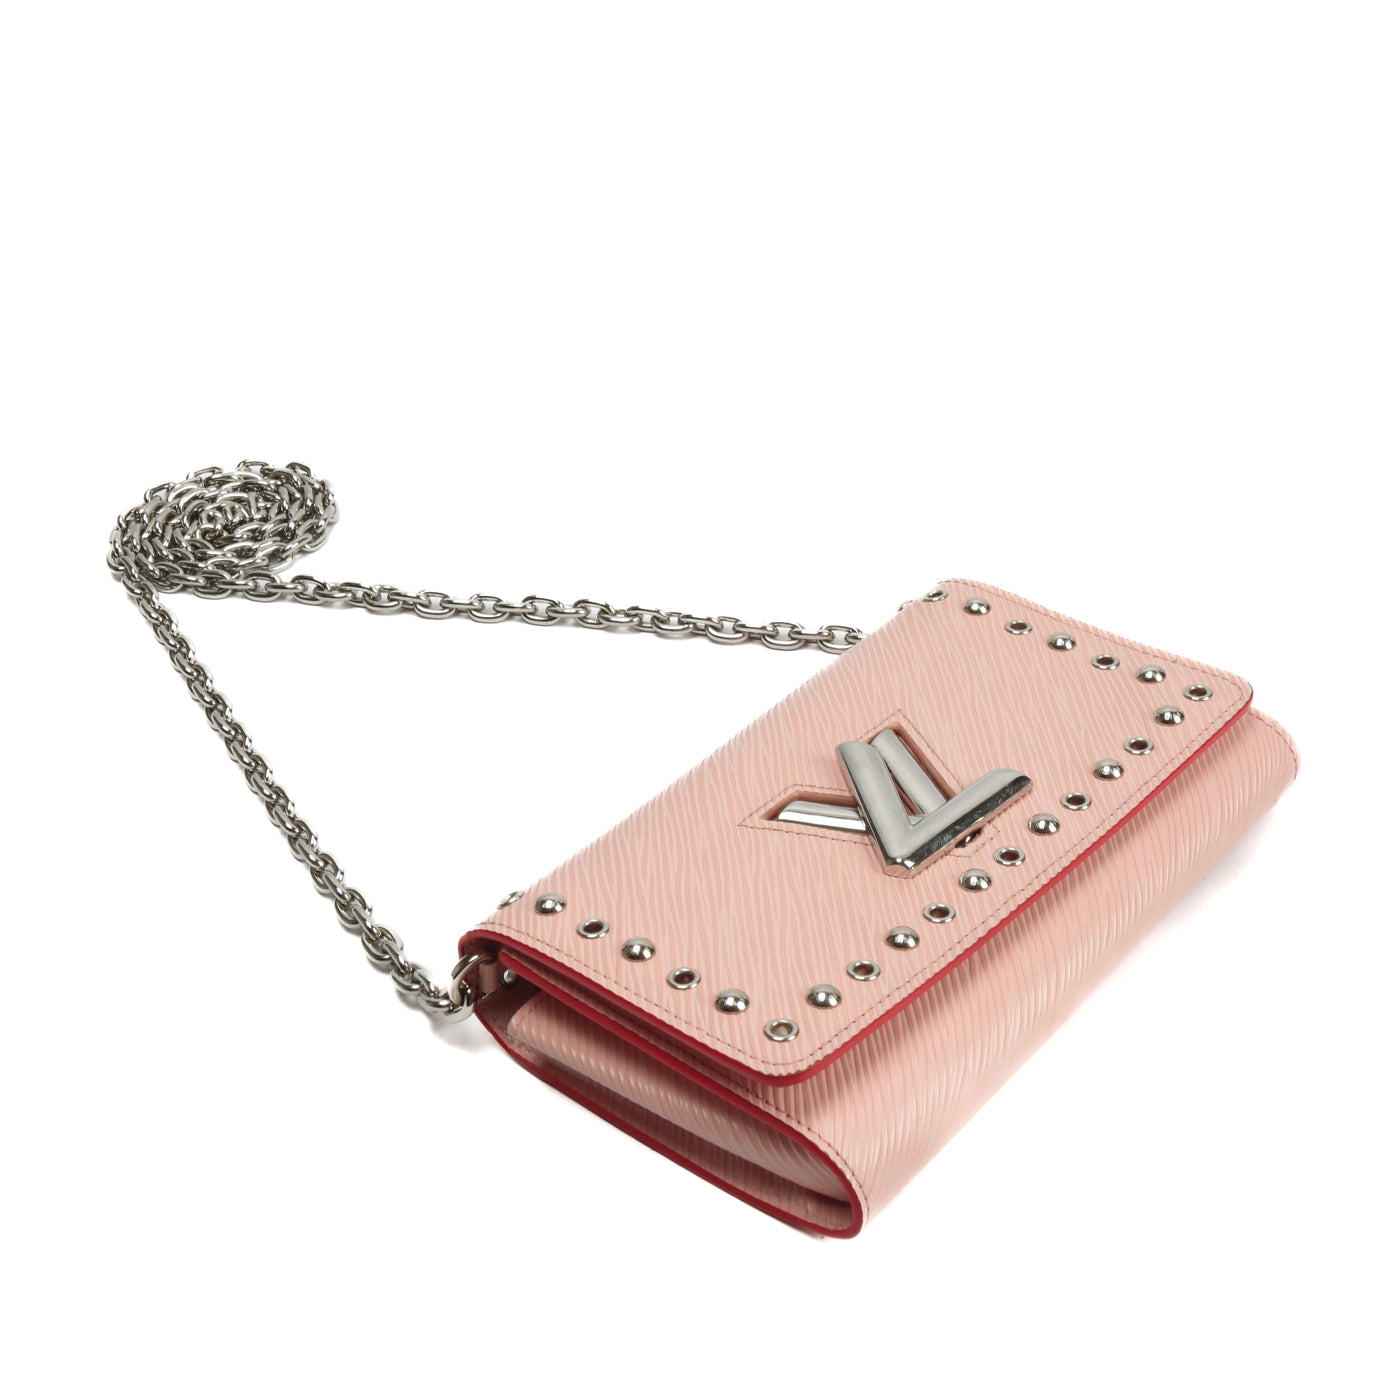 Louis Vuitton Twist Pink Epi Rose Ballerine Leather Chain Wallet